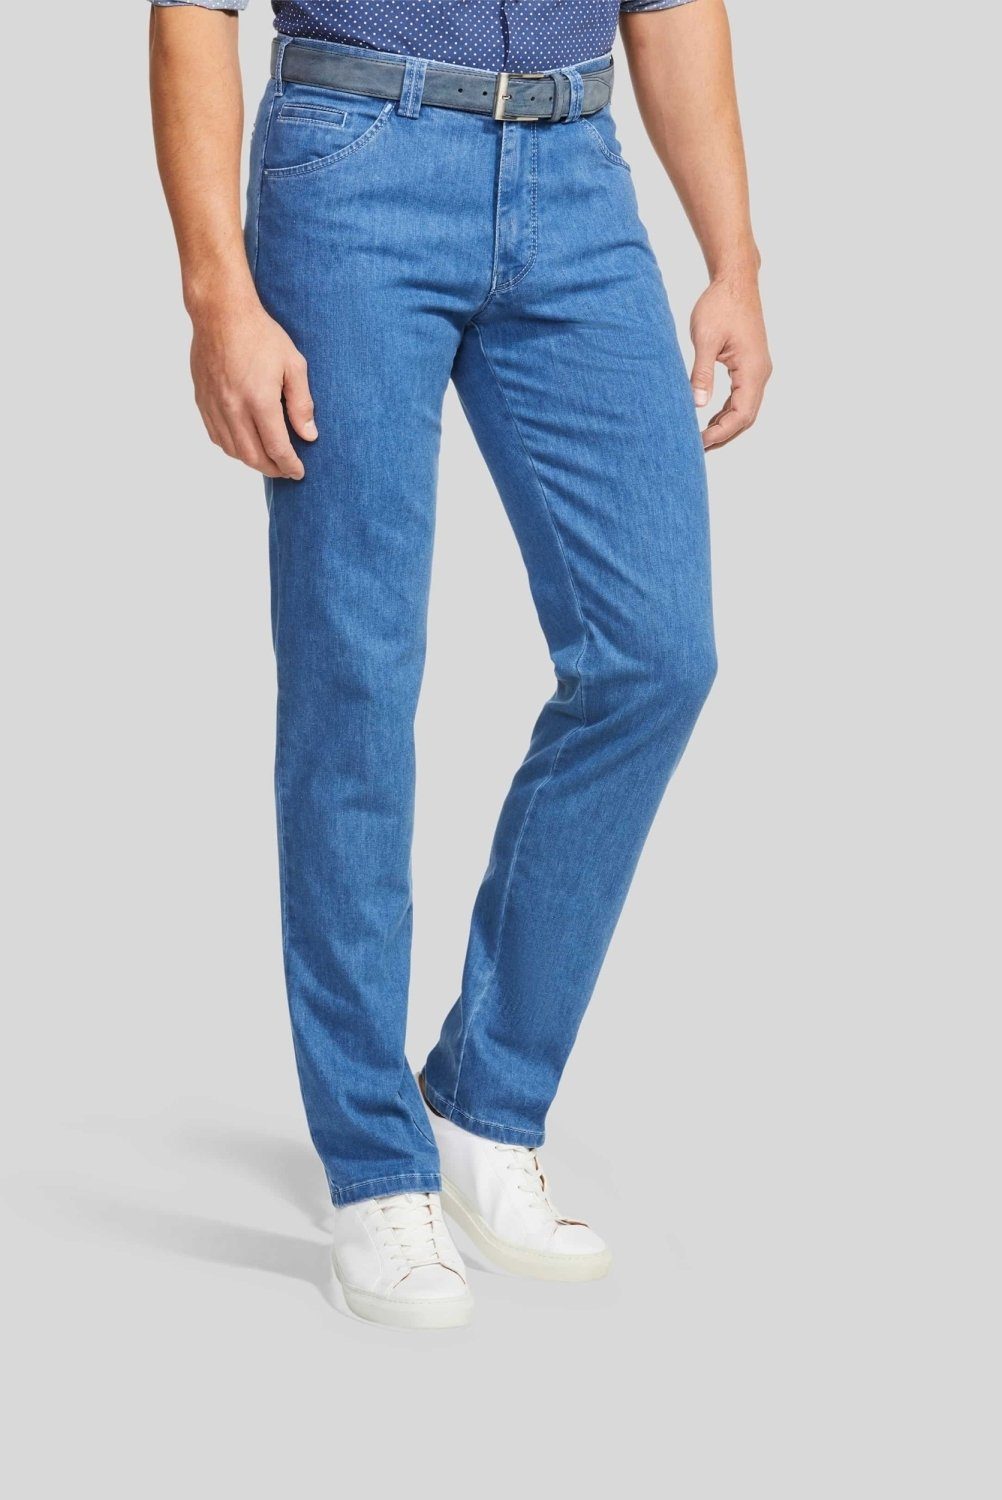 MEYER Jeans Herren online kaufen | OTTO